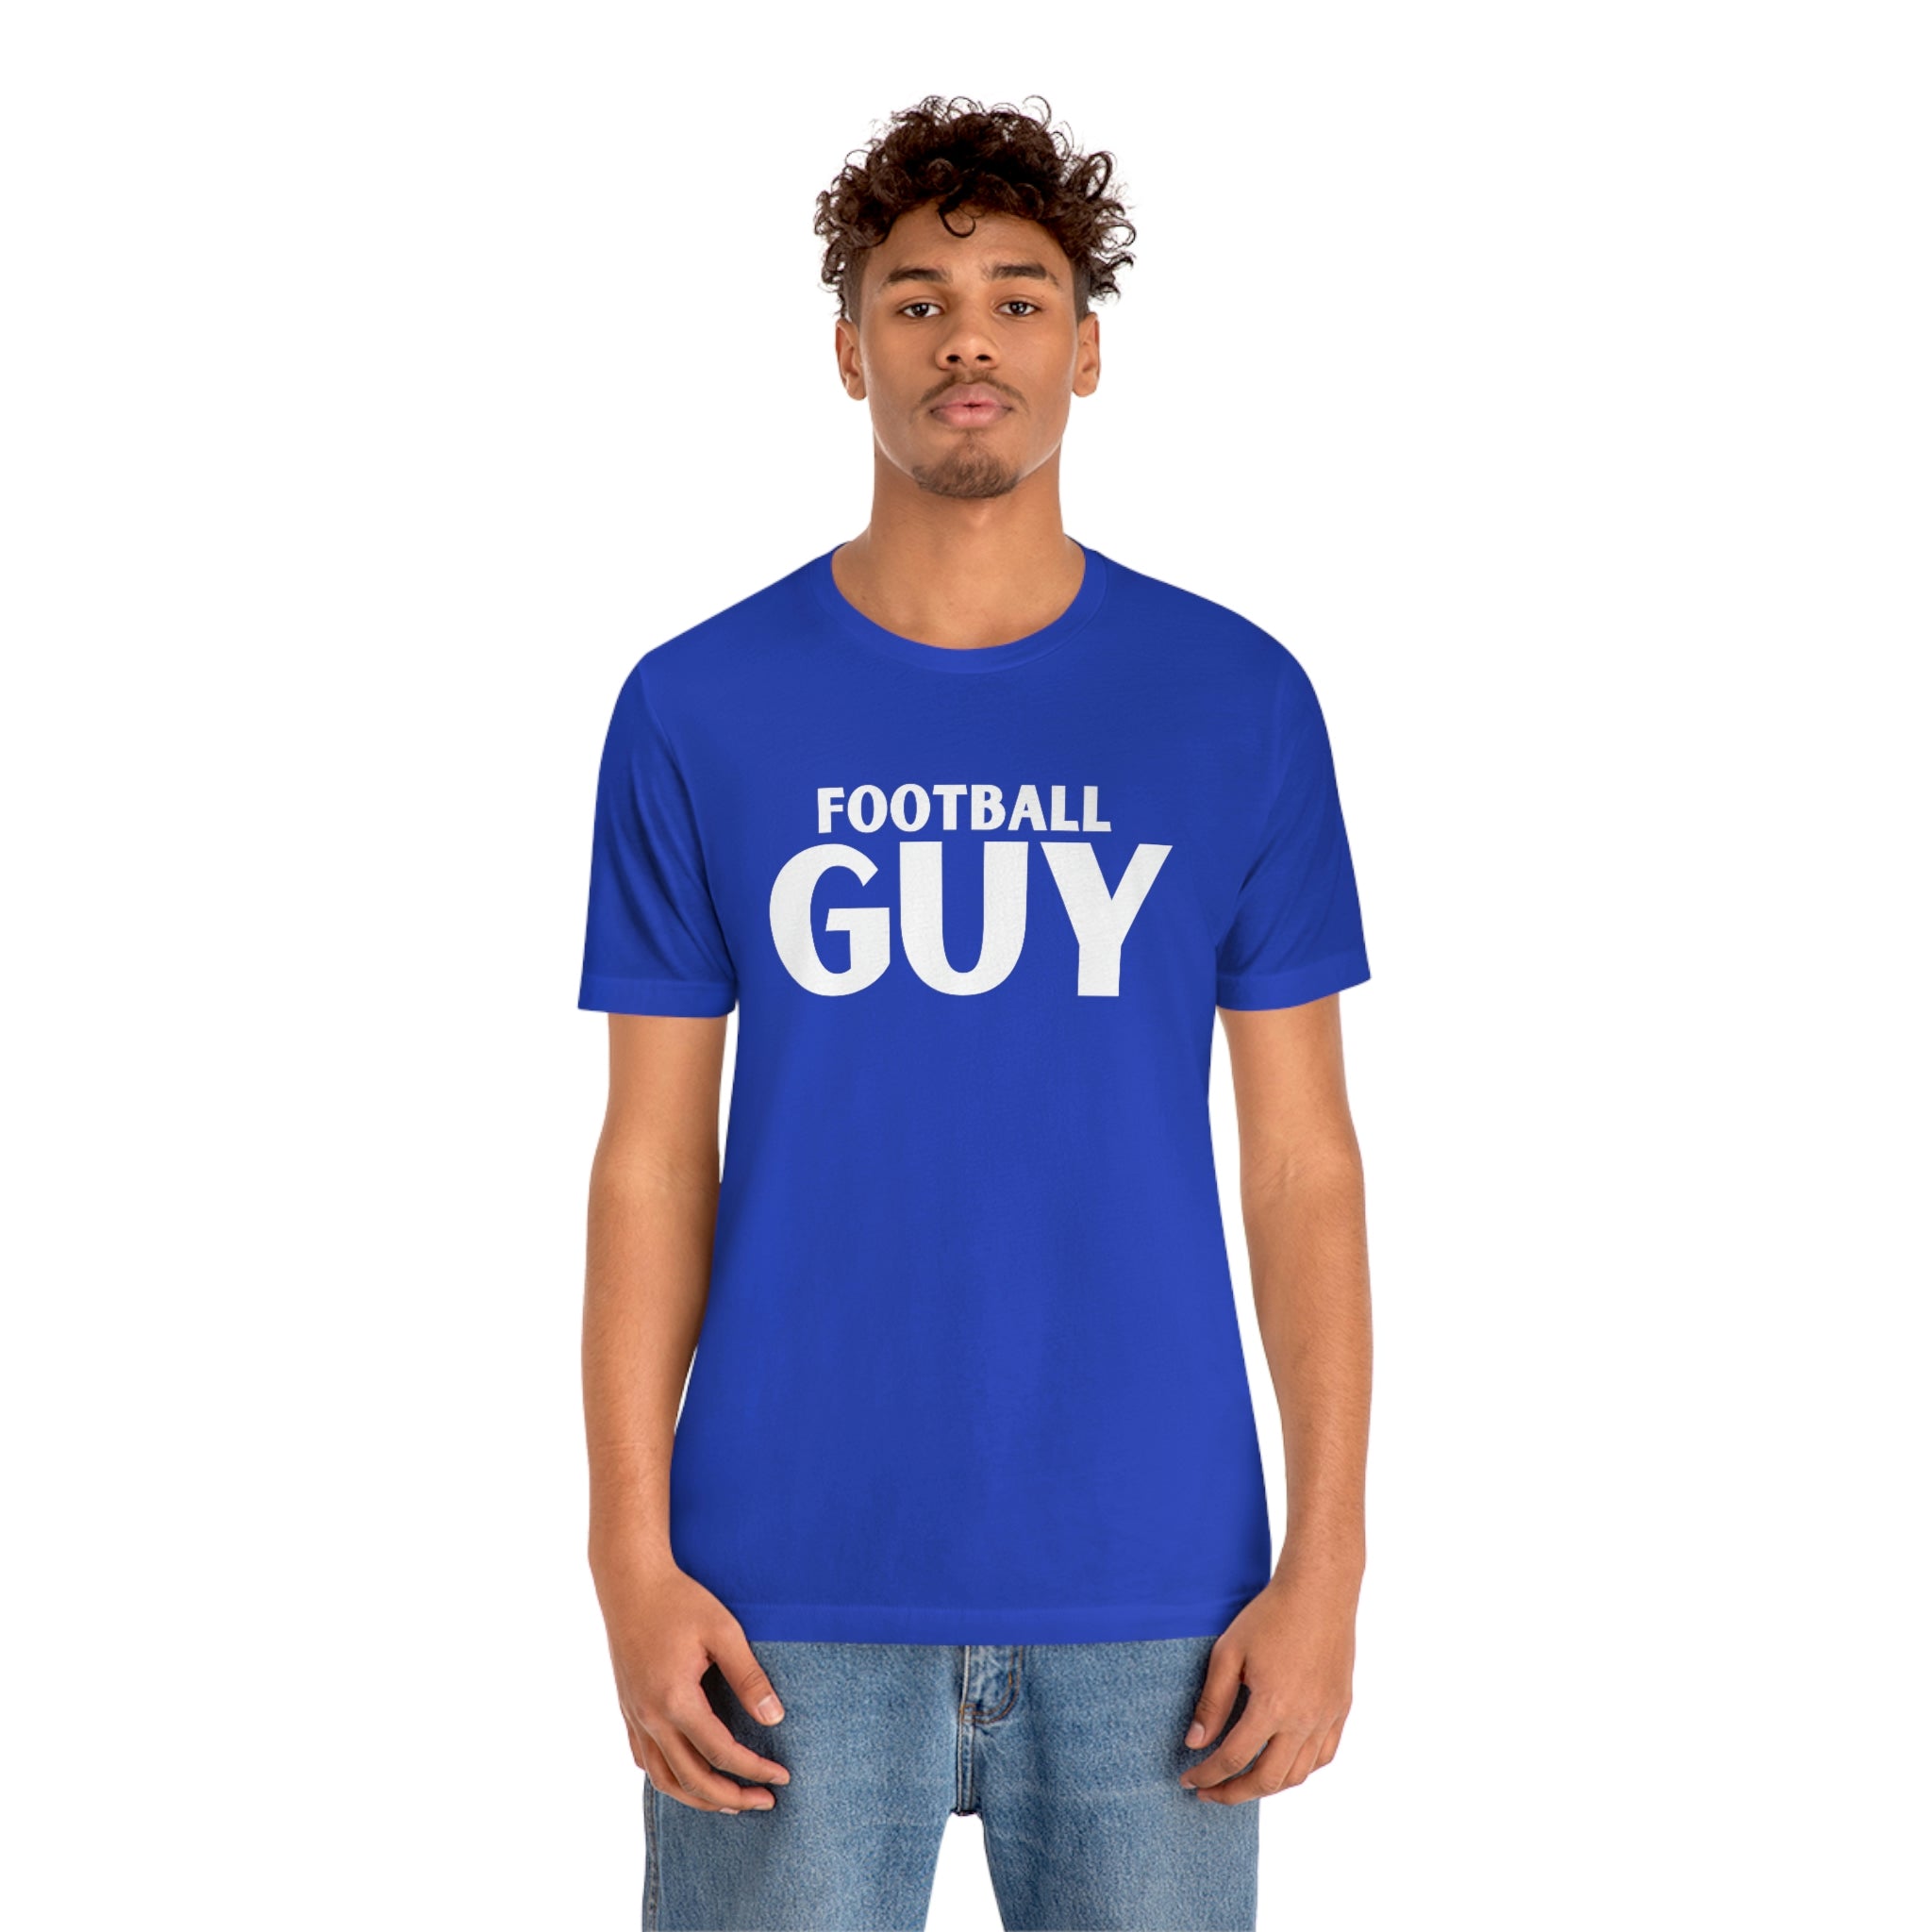 Football Guy Short Sleeve Tee